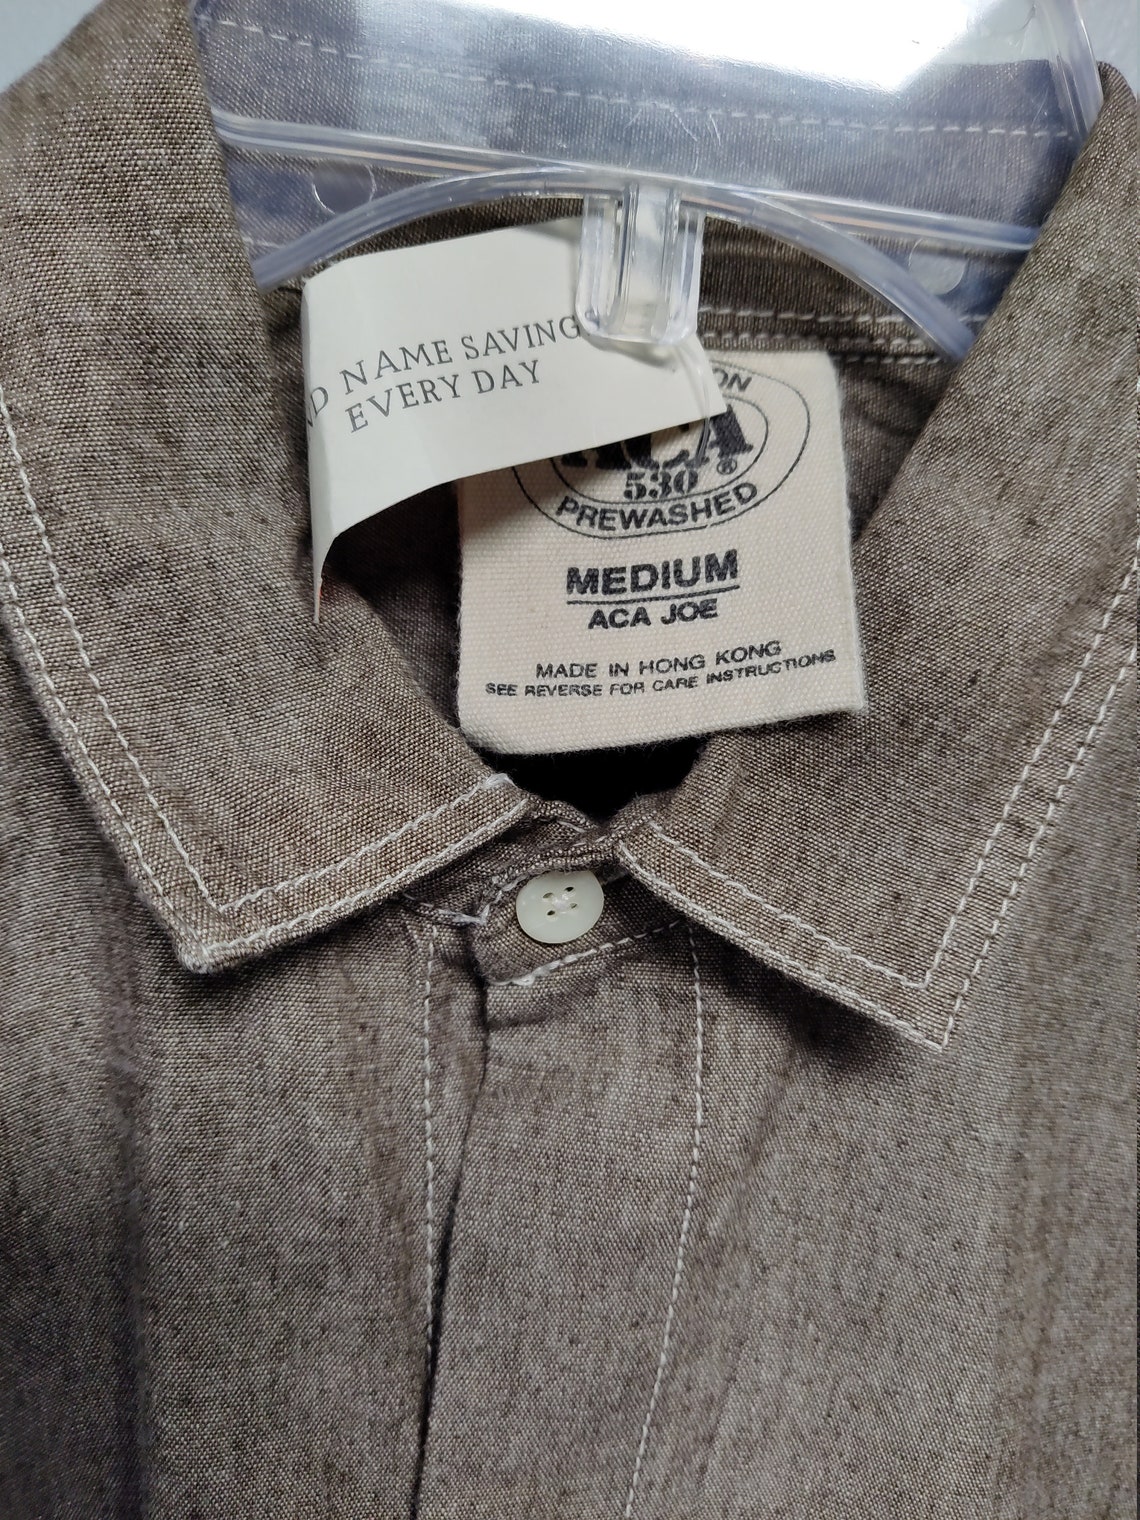 Vintage Mens Long Sleeve shirt by ACA JOE Prewashed look 100% | Etsy